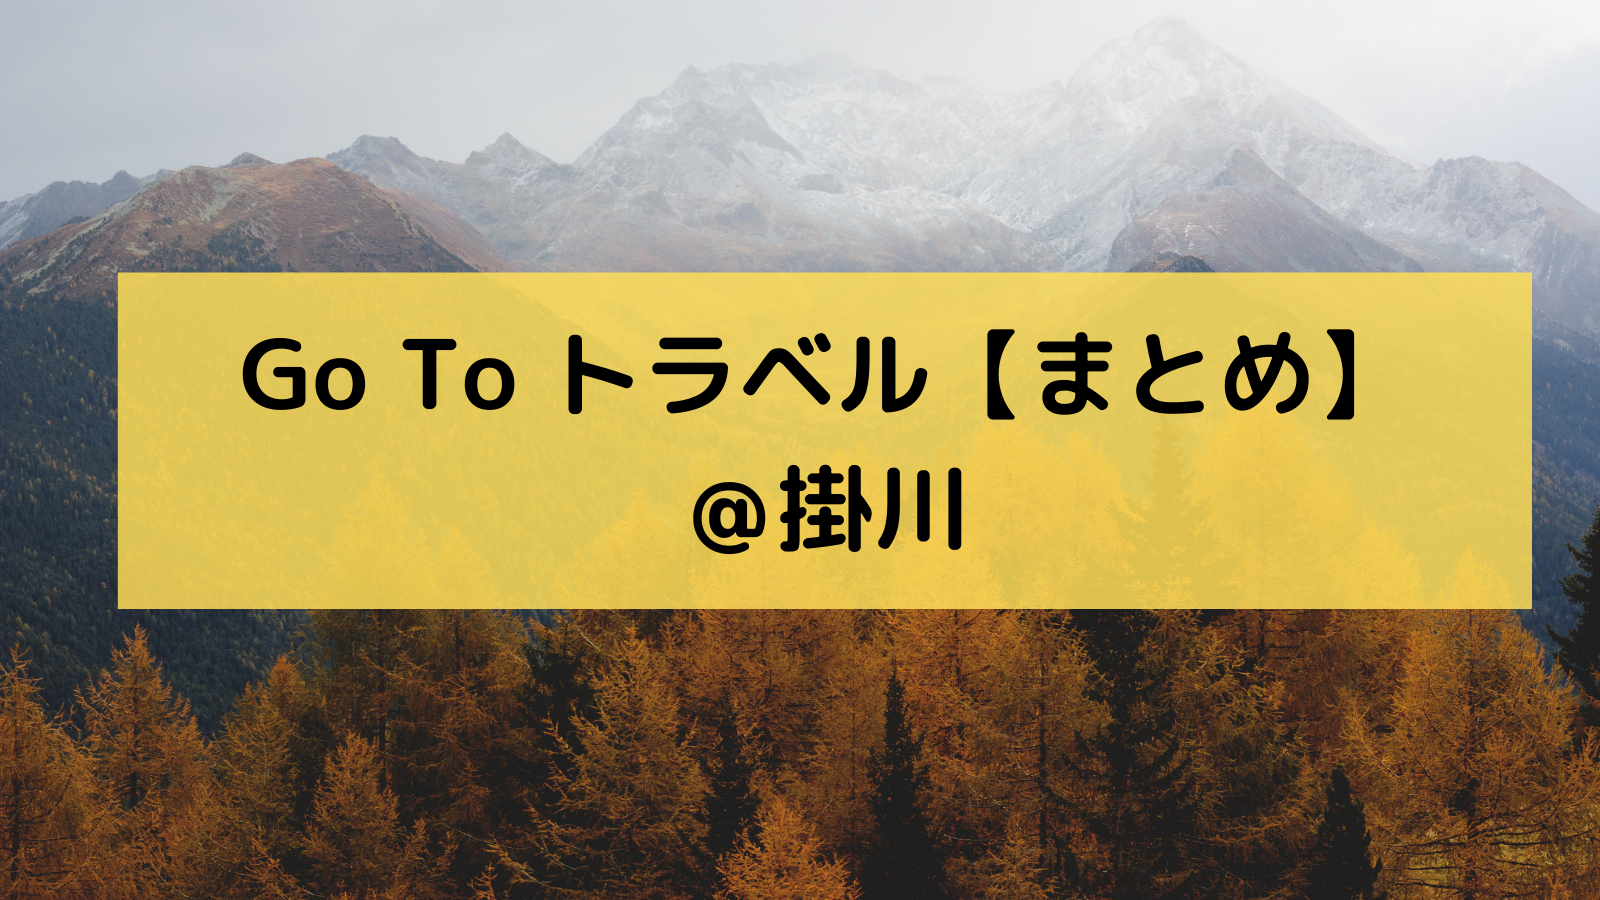 【Go To トラベル キャンペーン】掛川で使えるホテルやお得な仕組みを解説